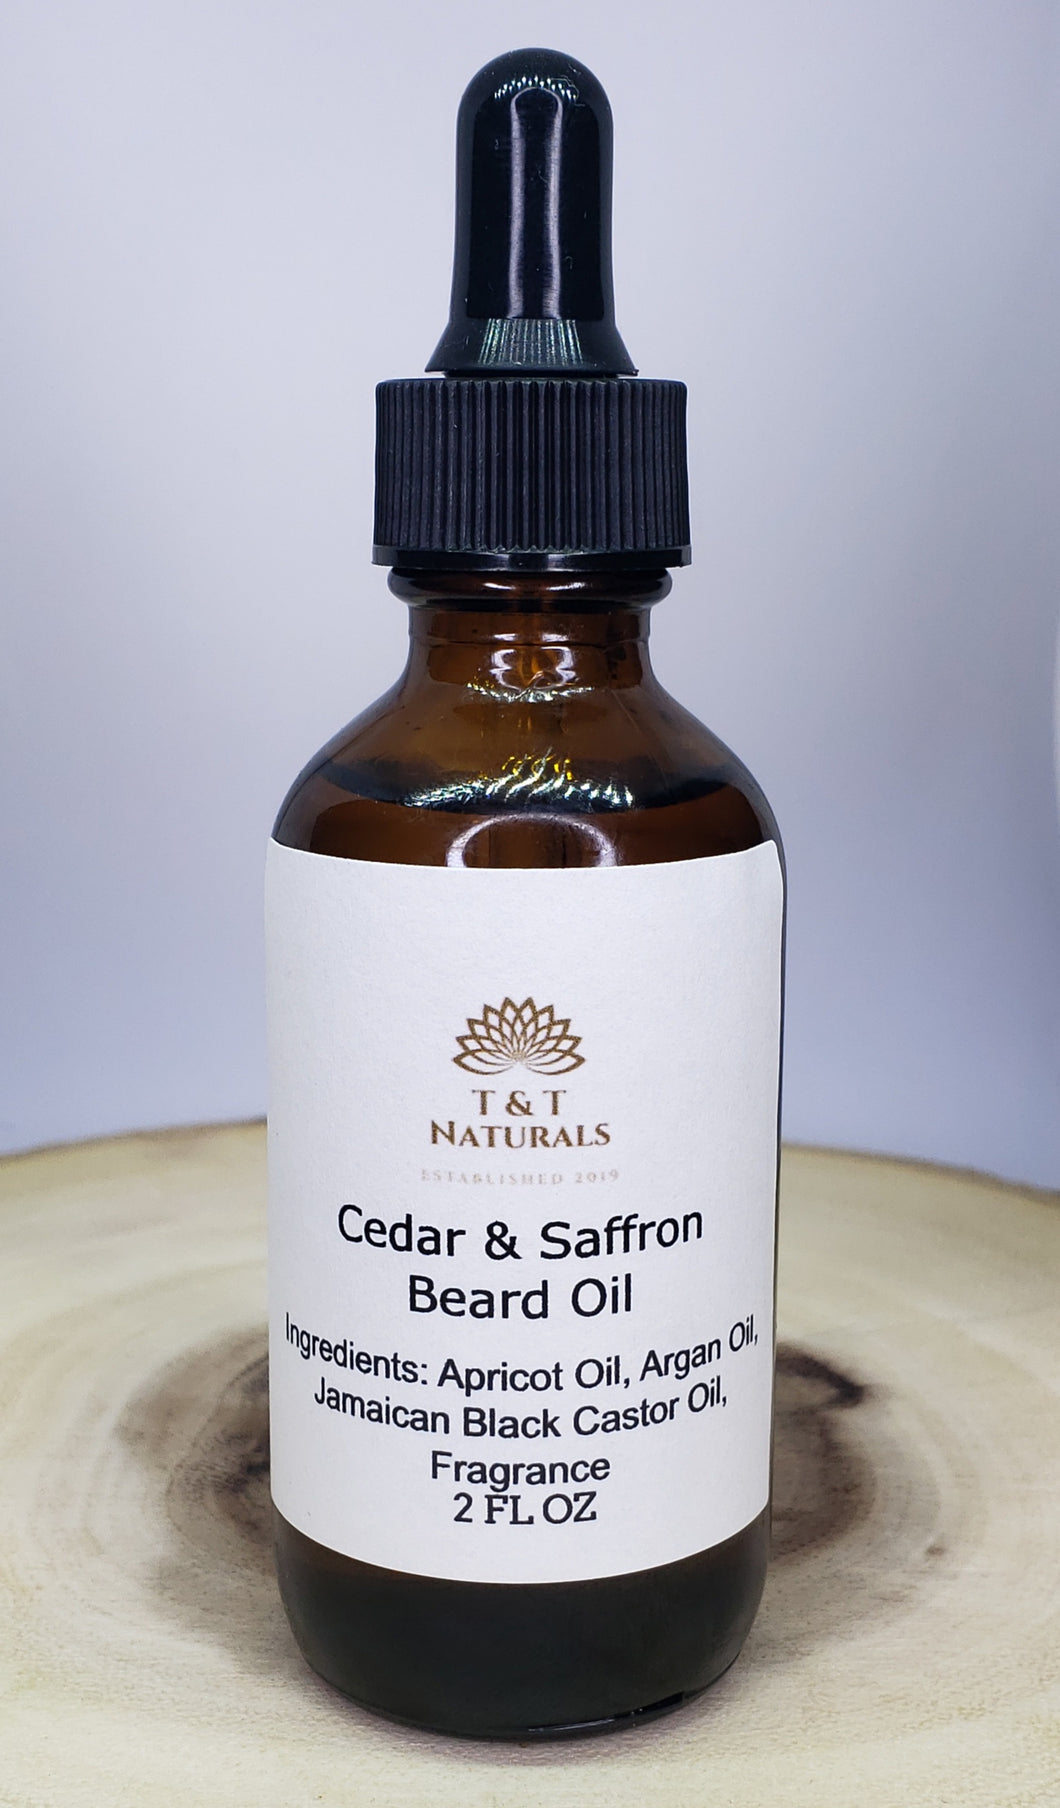 Cedar & Saffron Beard Oil